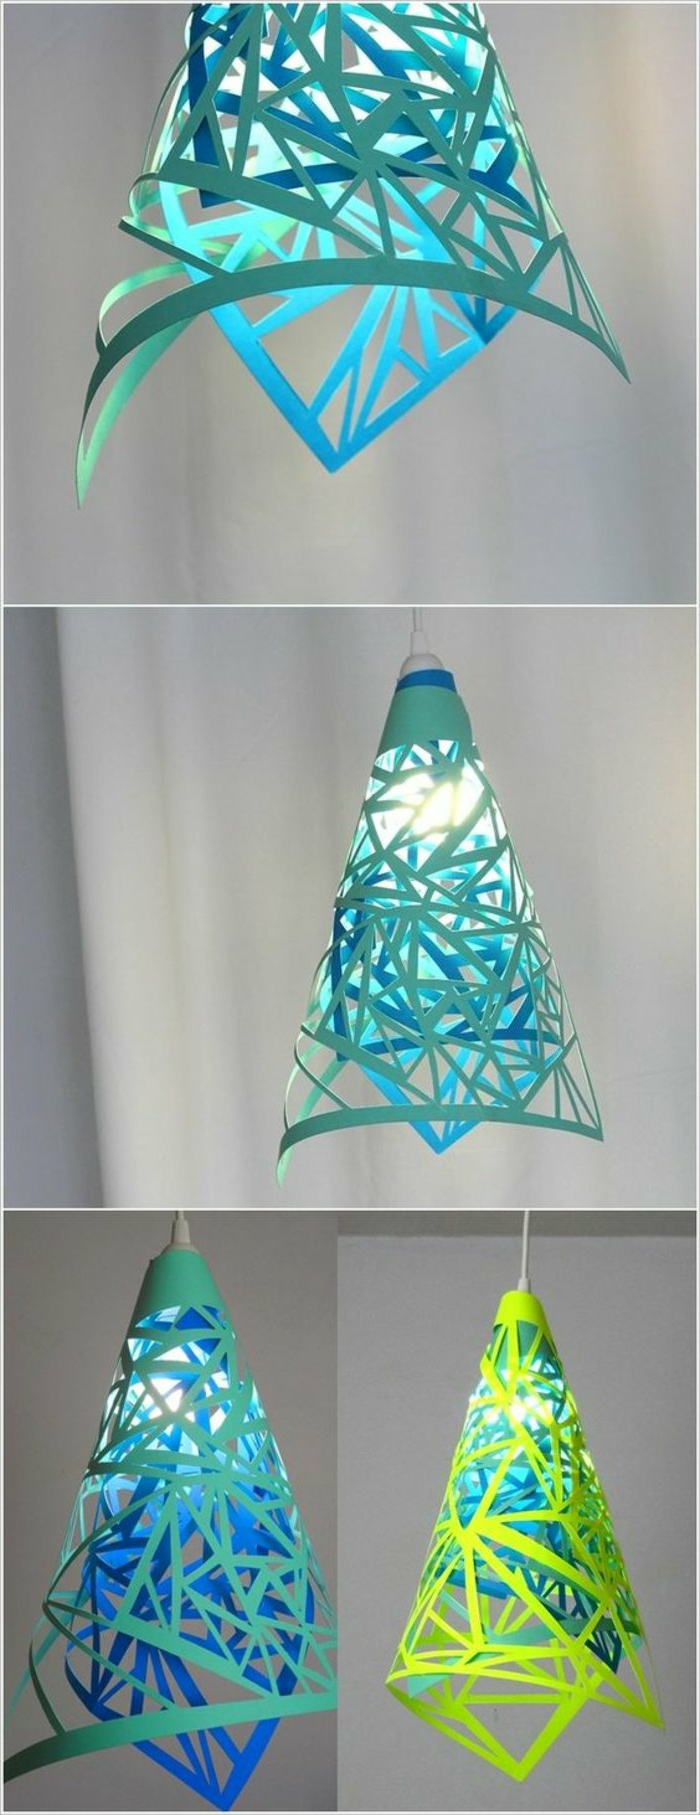 ein super interessantes Design für Lampenschirme aus farbigen Kartons, konische Form